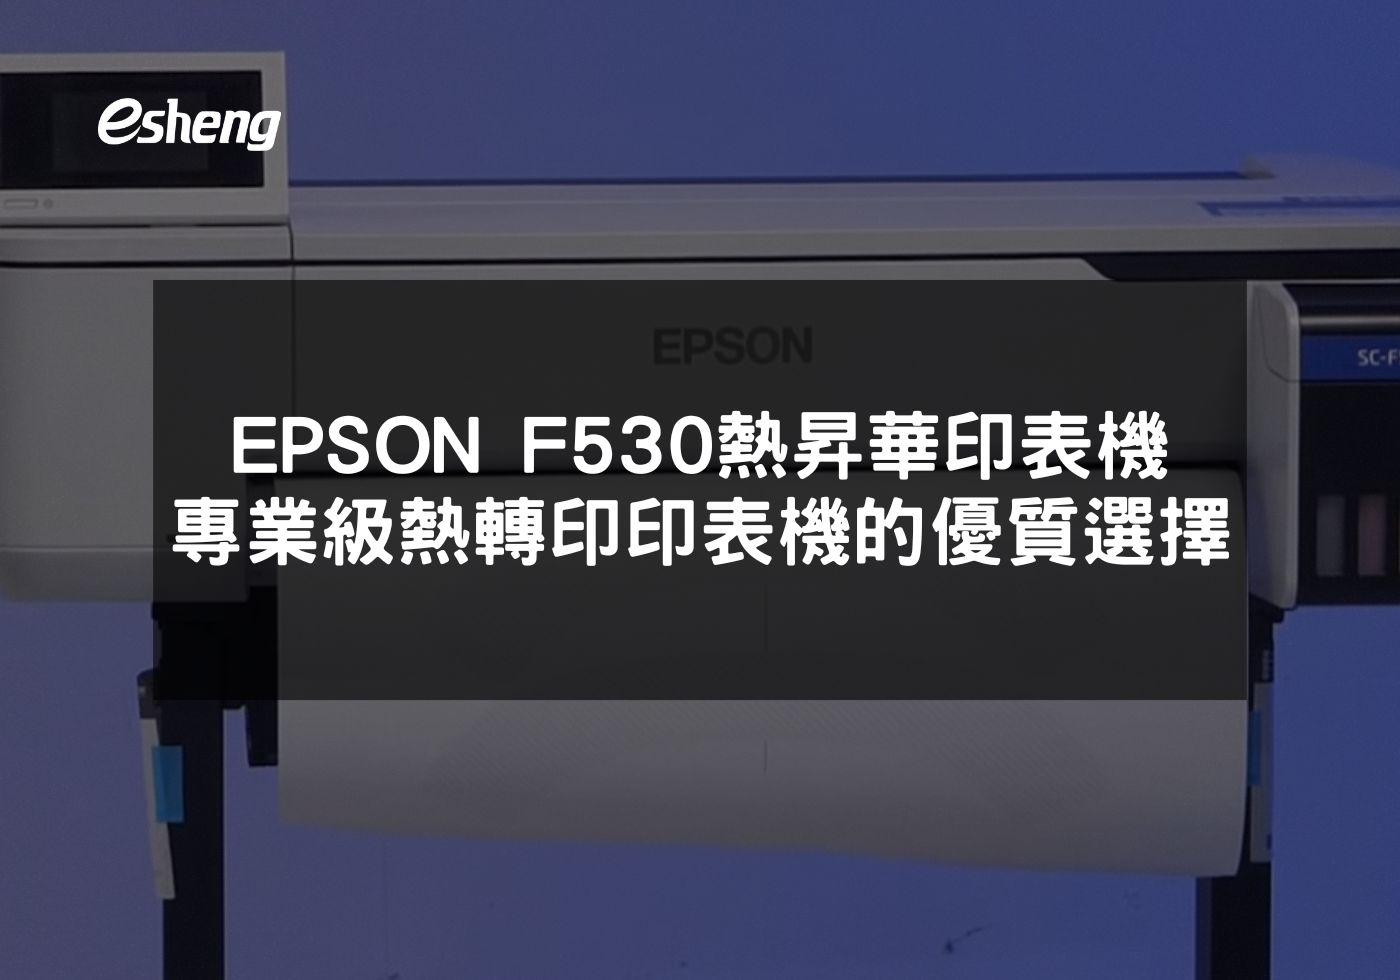 您目前正在查看 EPSON F530 熱昇華印表機 專業級熱轉印印表機的優質選擇